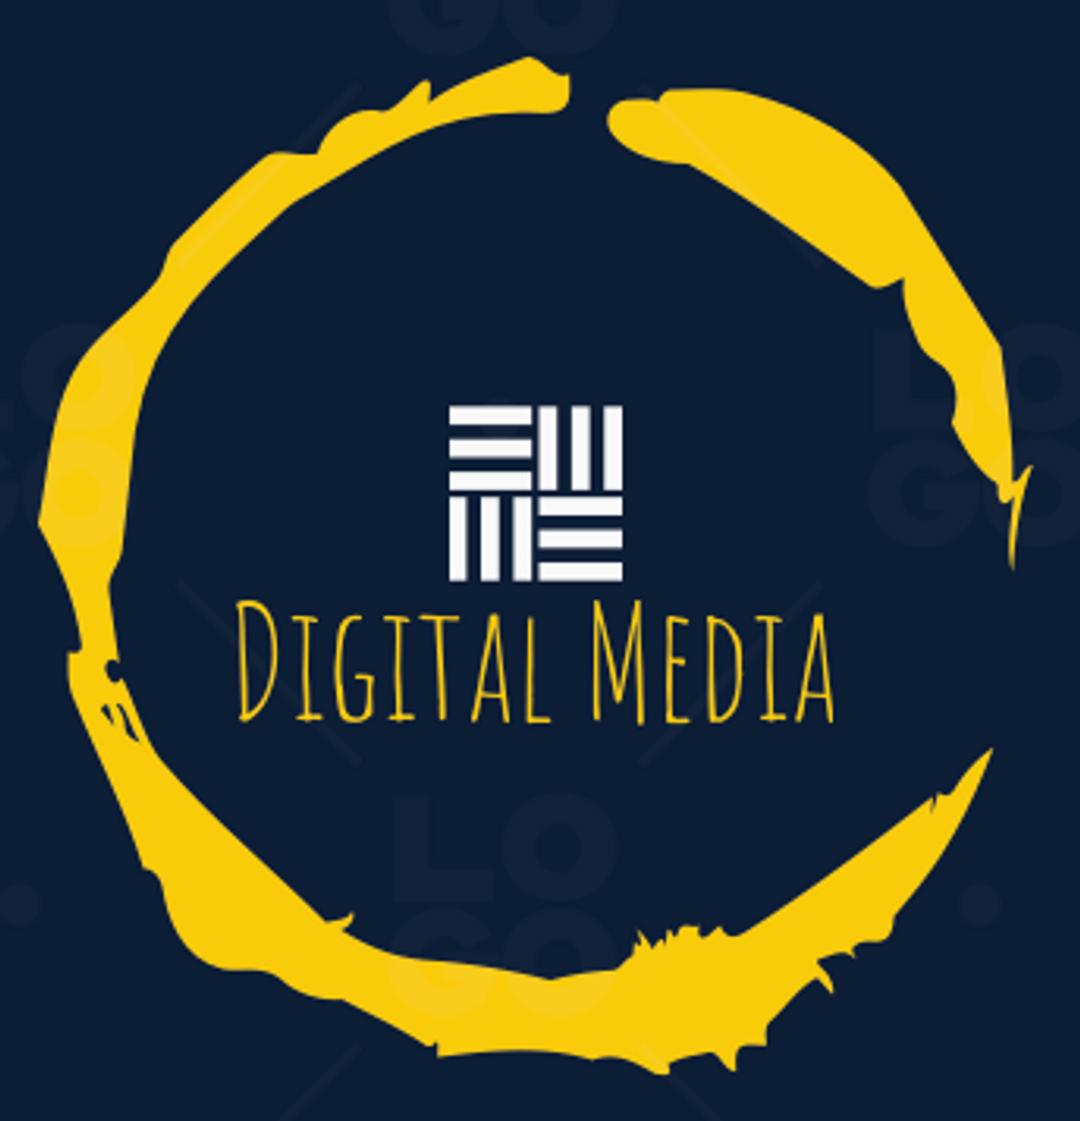 media logo samples